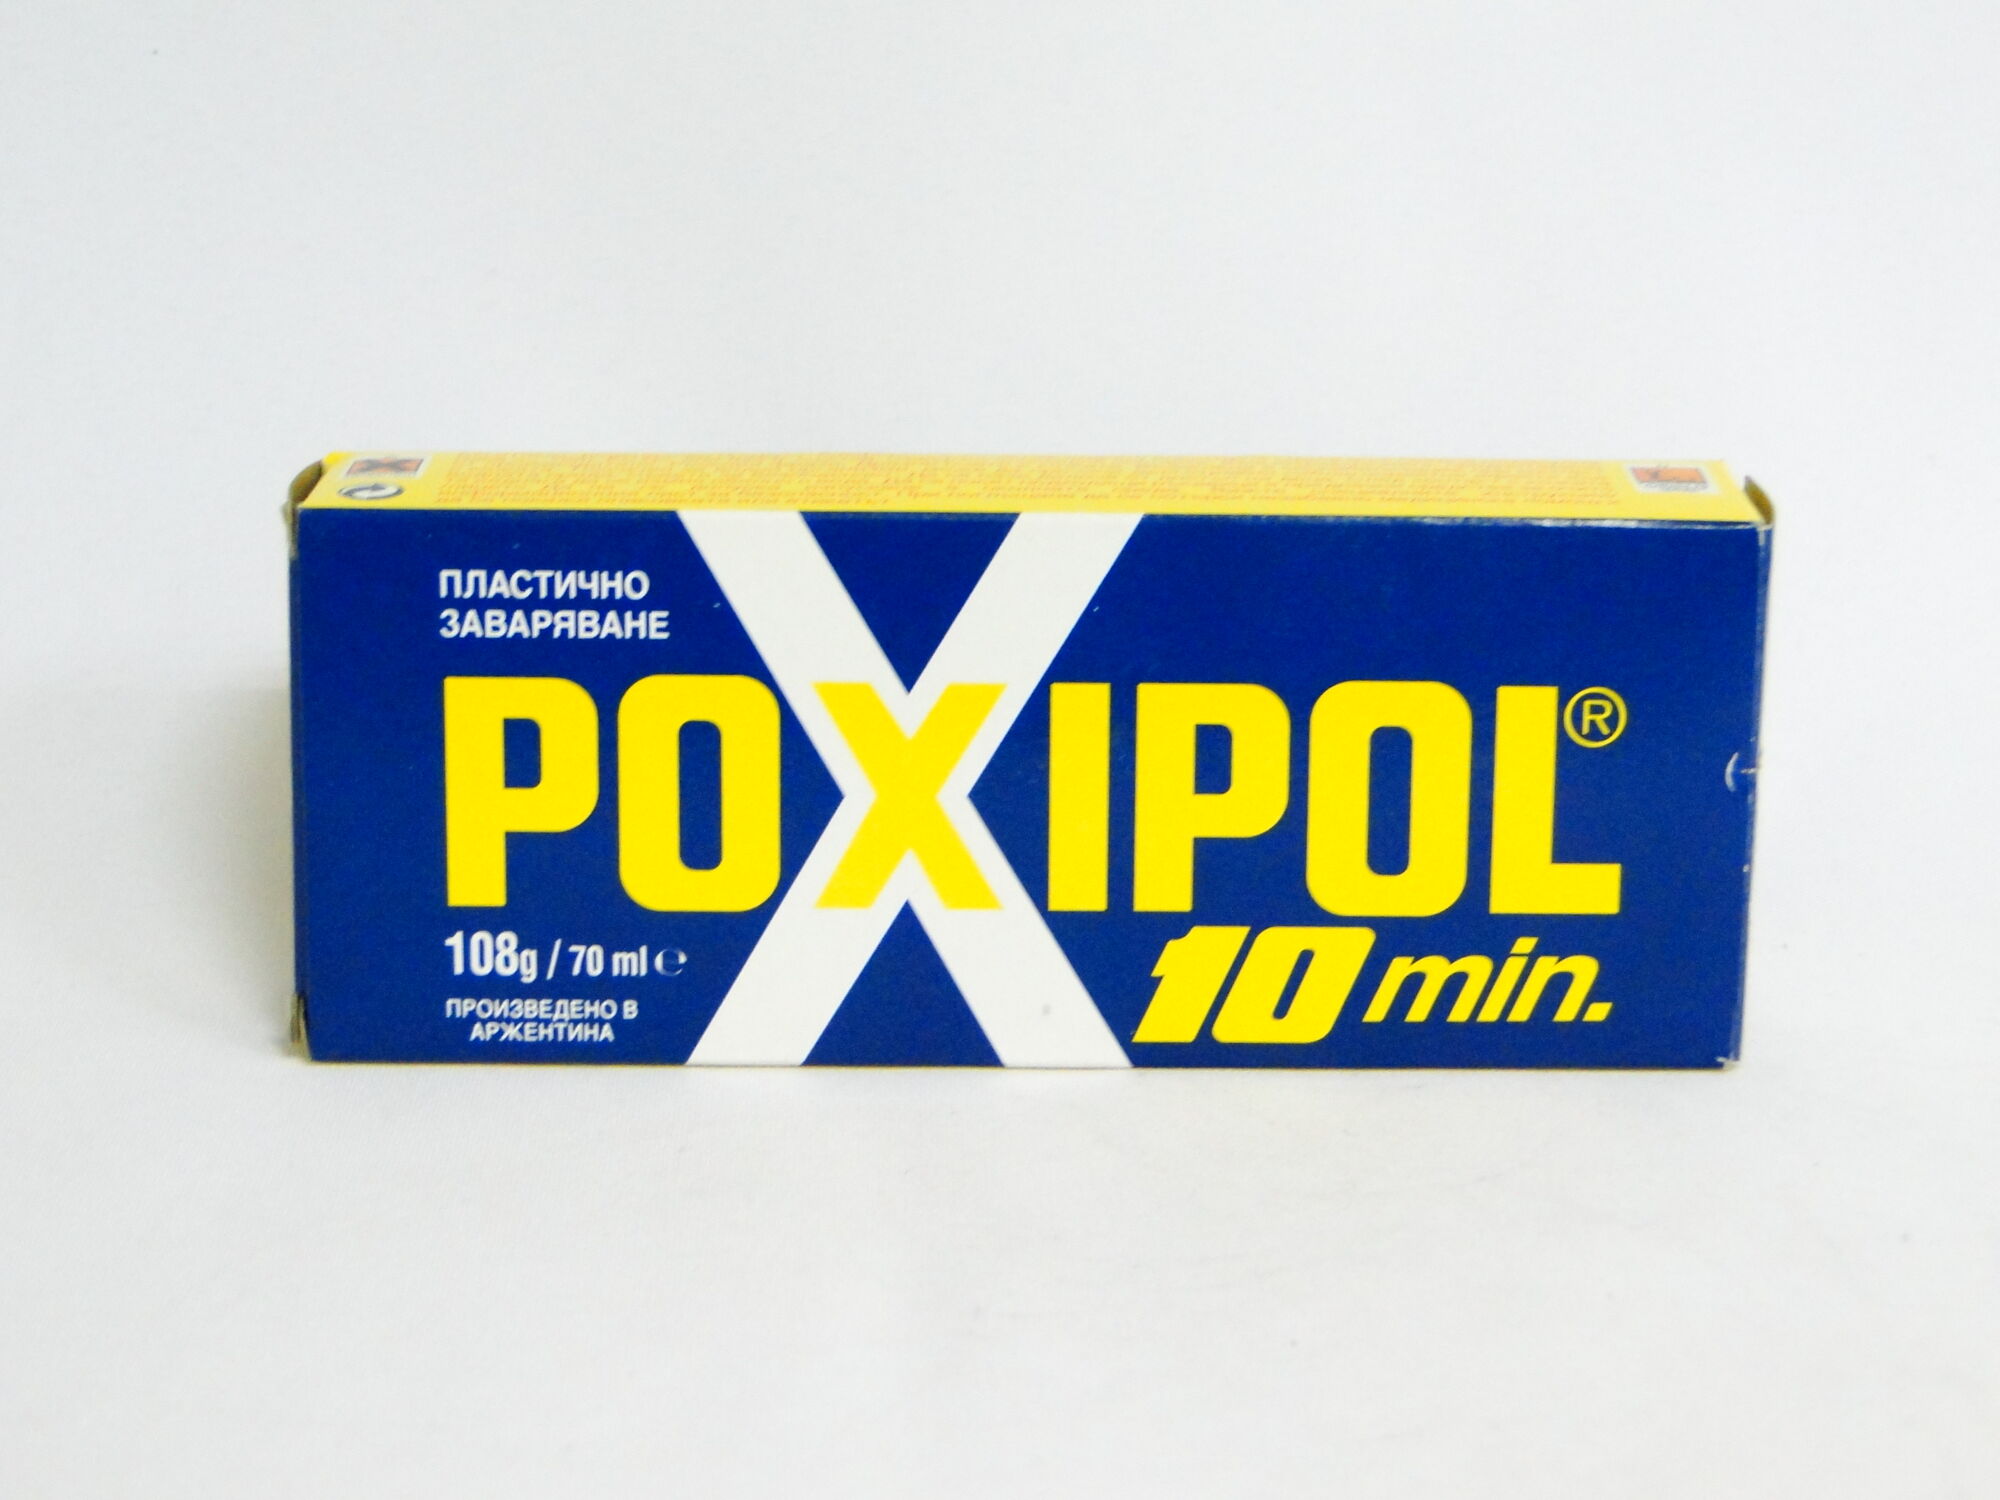 Клей холодная сварка для металла Poxipol 00266 14 мл синяя упаковка